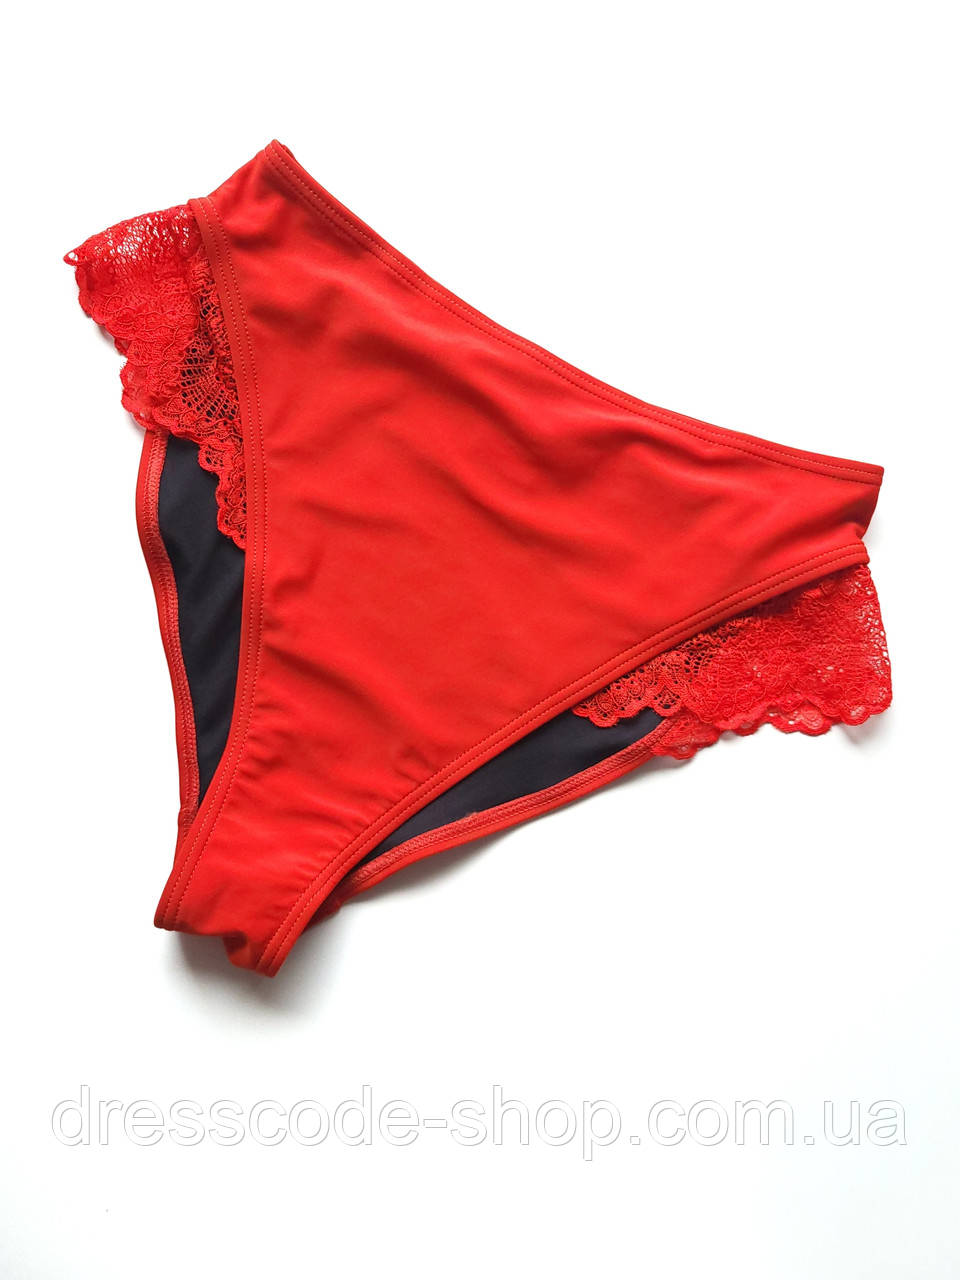 Трусики для плавання жіночі з гіпюром Без бренду Червоні